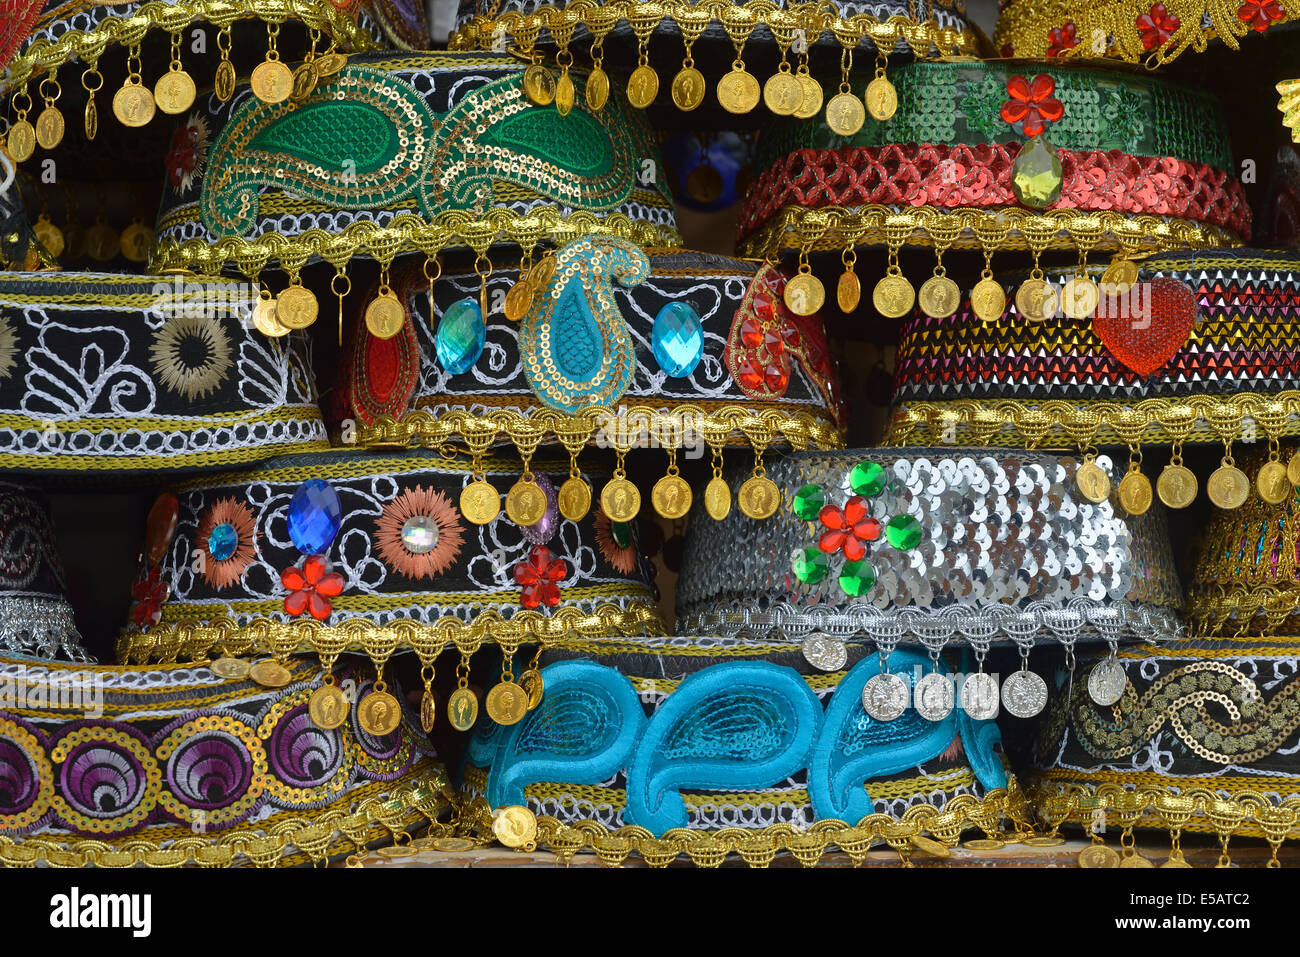 Chapeaux traditionnels dans une boutique de souvenirs, Lahic, Azerbaïdjan Banque D'Images